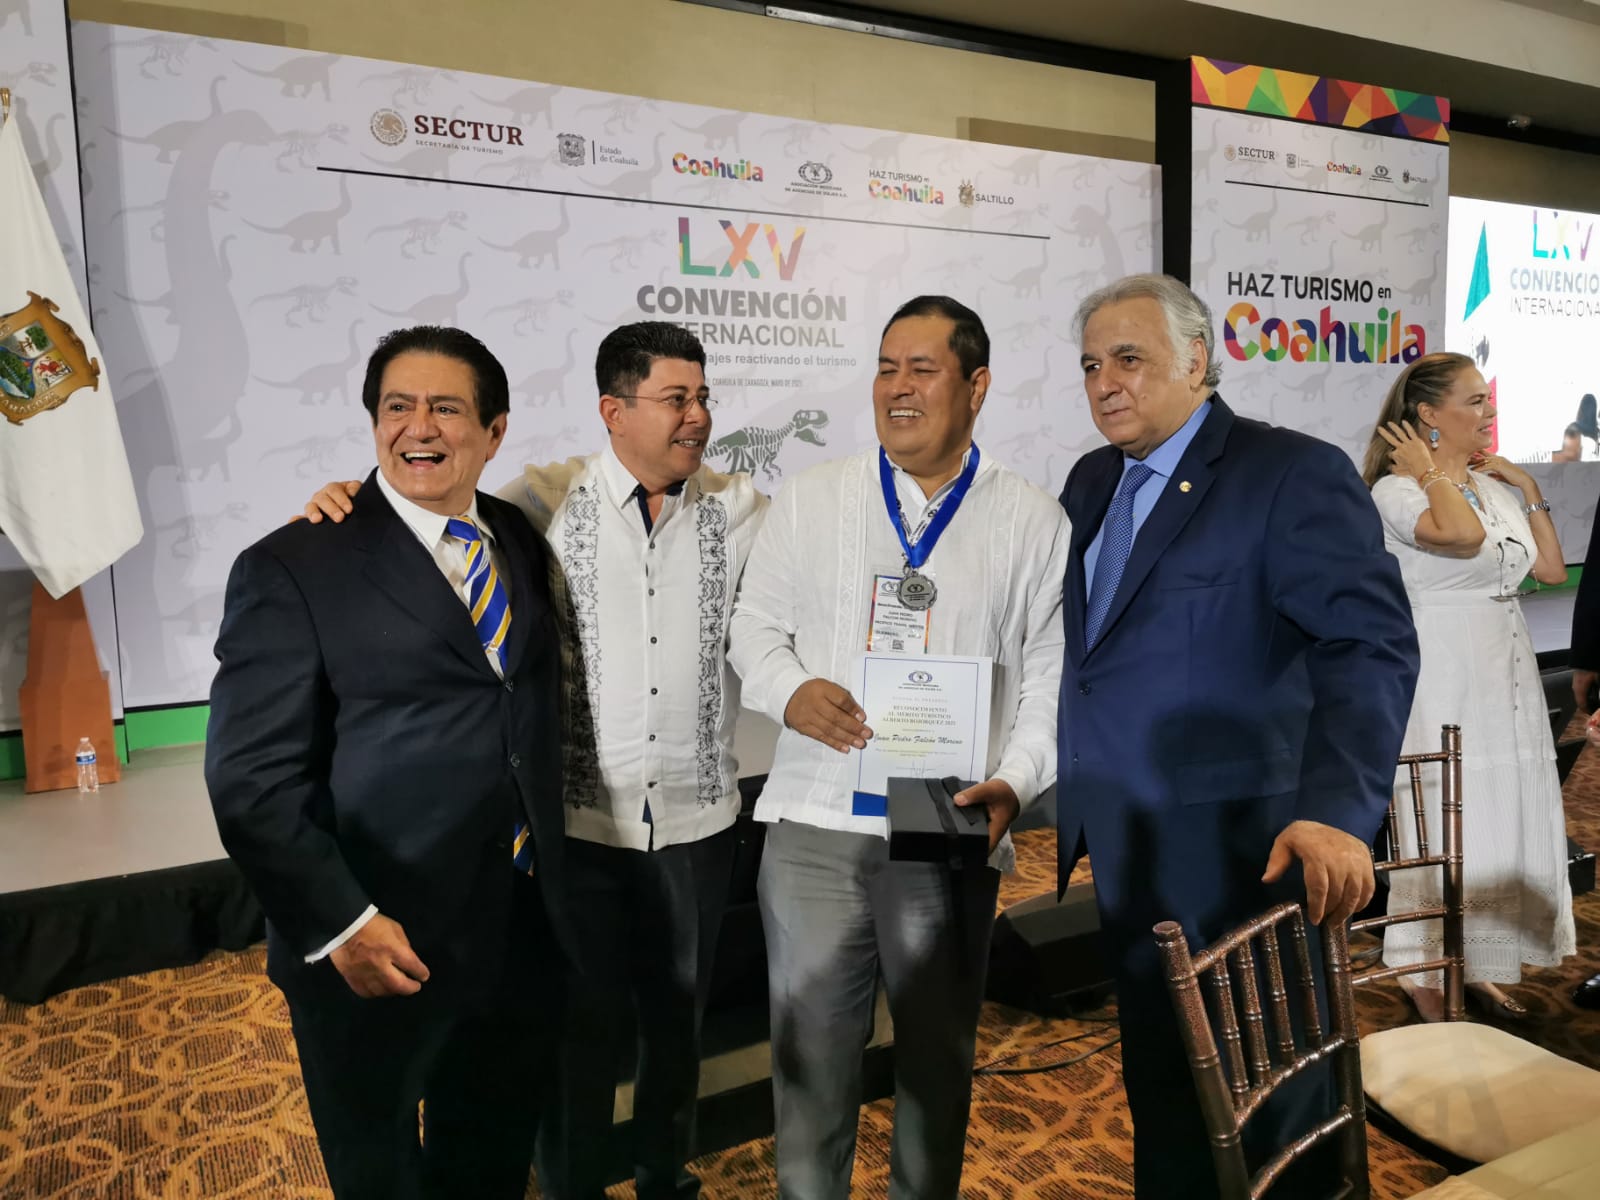 LXV Convención Anual de la Asociación Mexicana de Agencias de Viajes (AMAV).